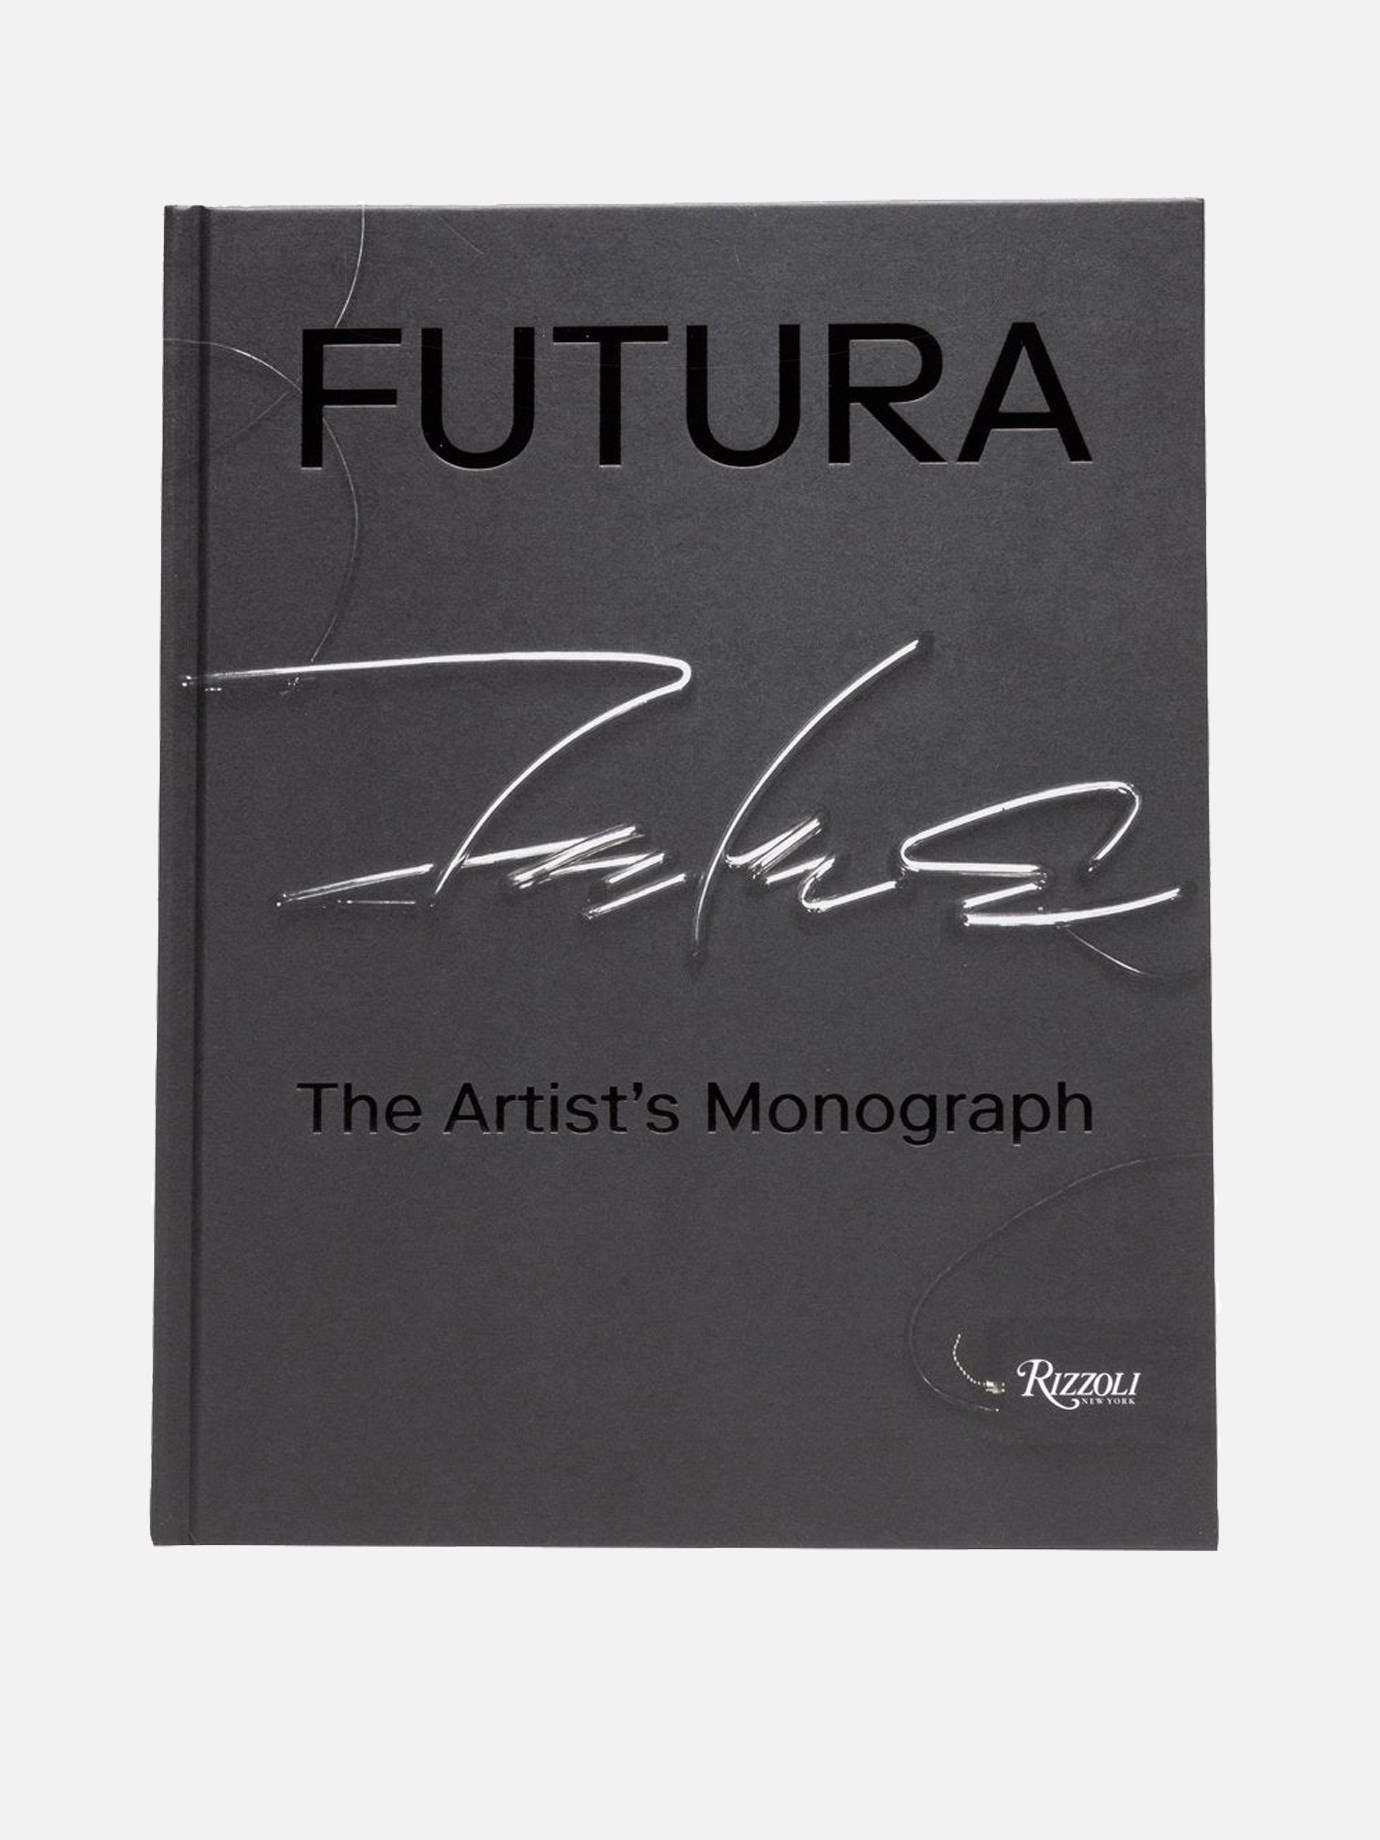  The Artist's Monograph  Rizzoli Futuraby Rizzoli - 1